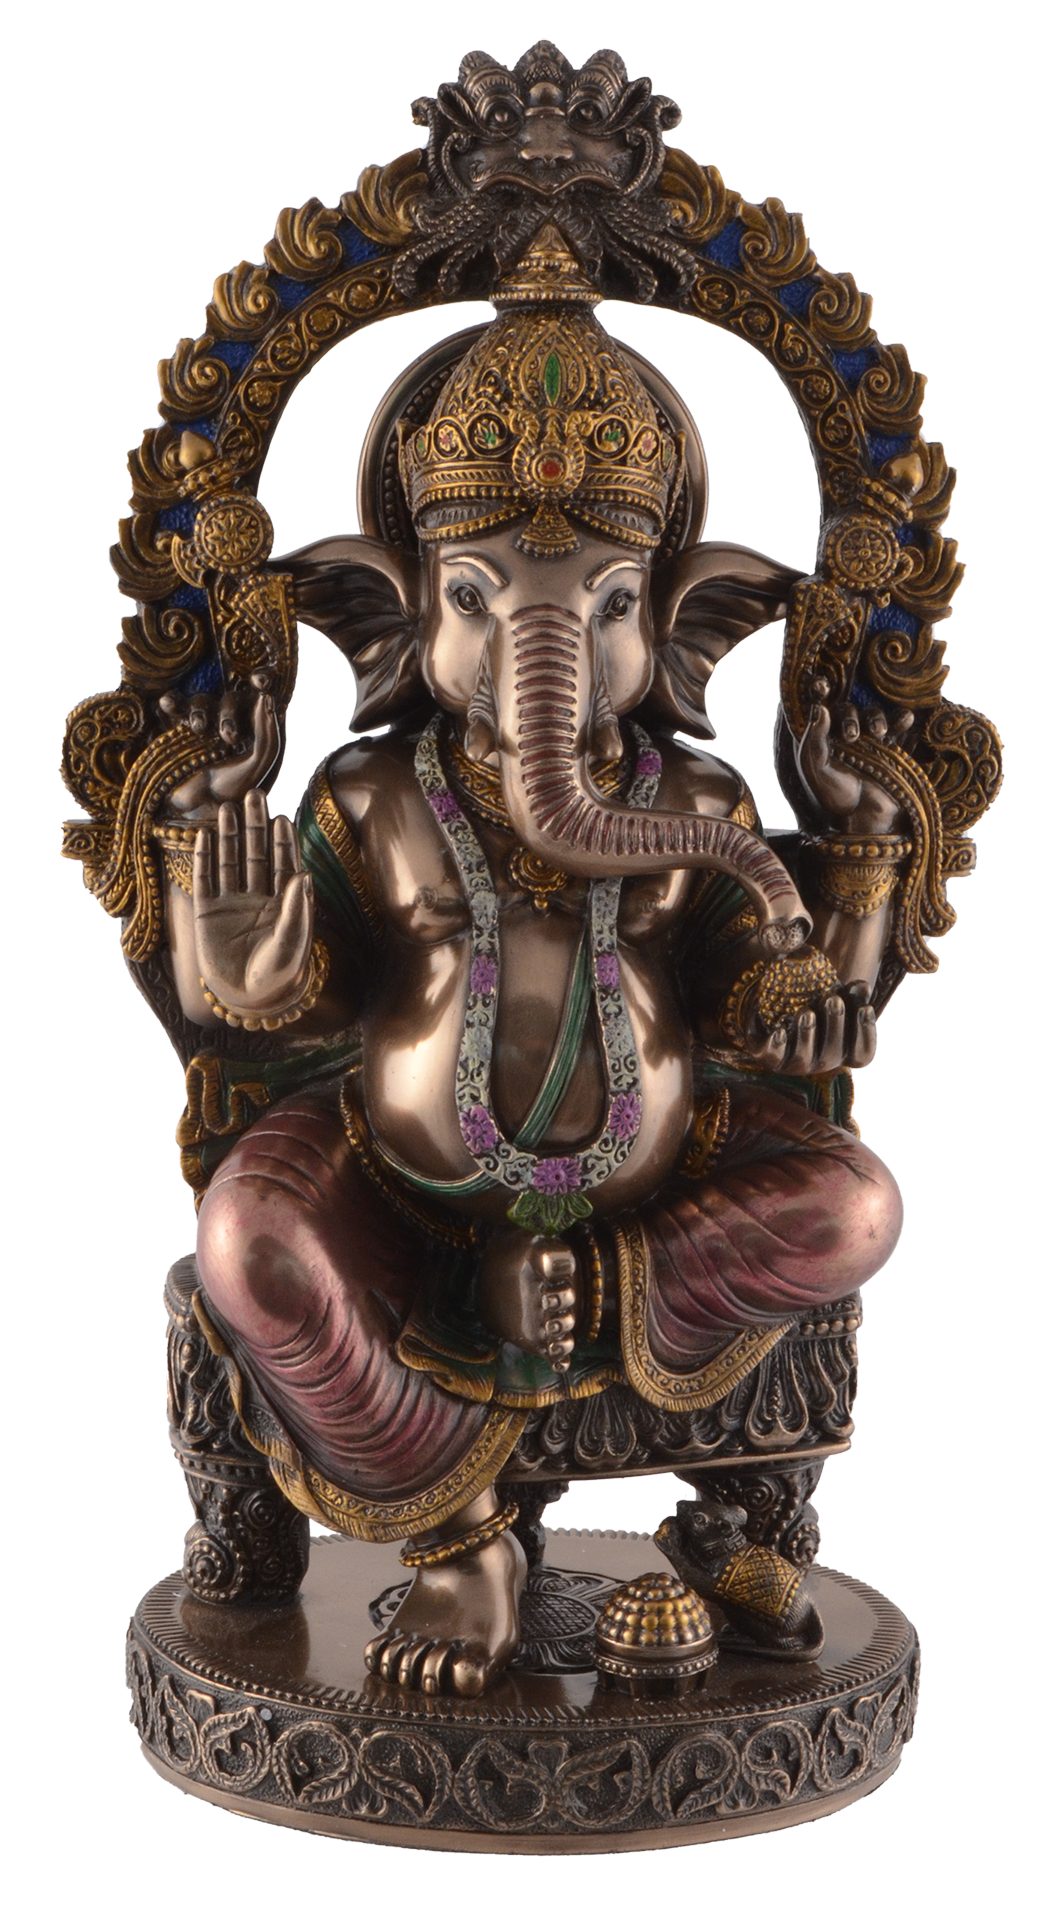 Vogler direct Gmbh Dekofigur Ganesha Indischer Glücksgott auf Thron unter Tempelbogen by Veronese, von Hand bronziert und coloriert, LxBxH: ca. 15x10x26cm